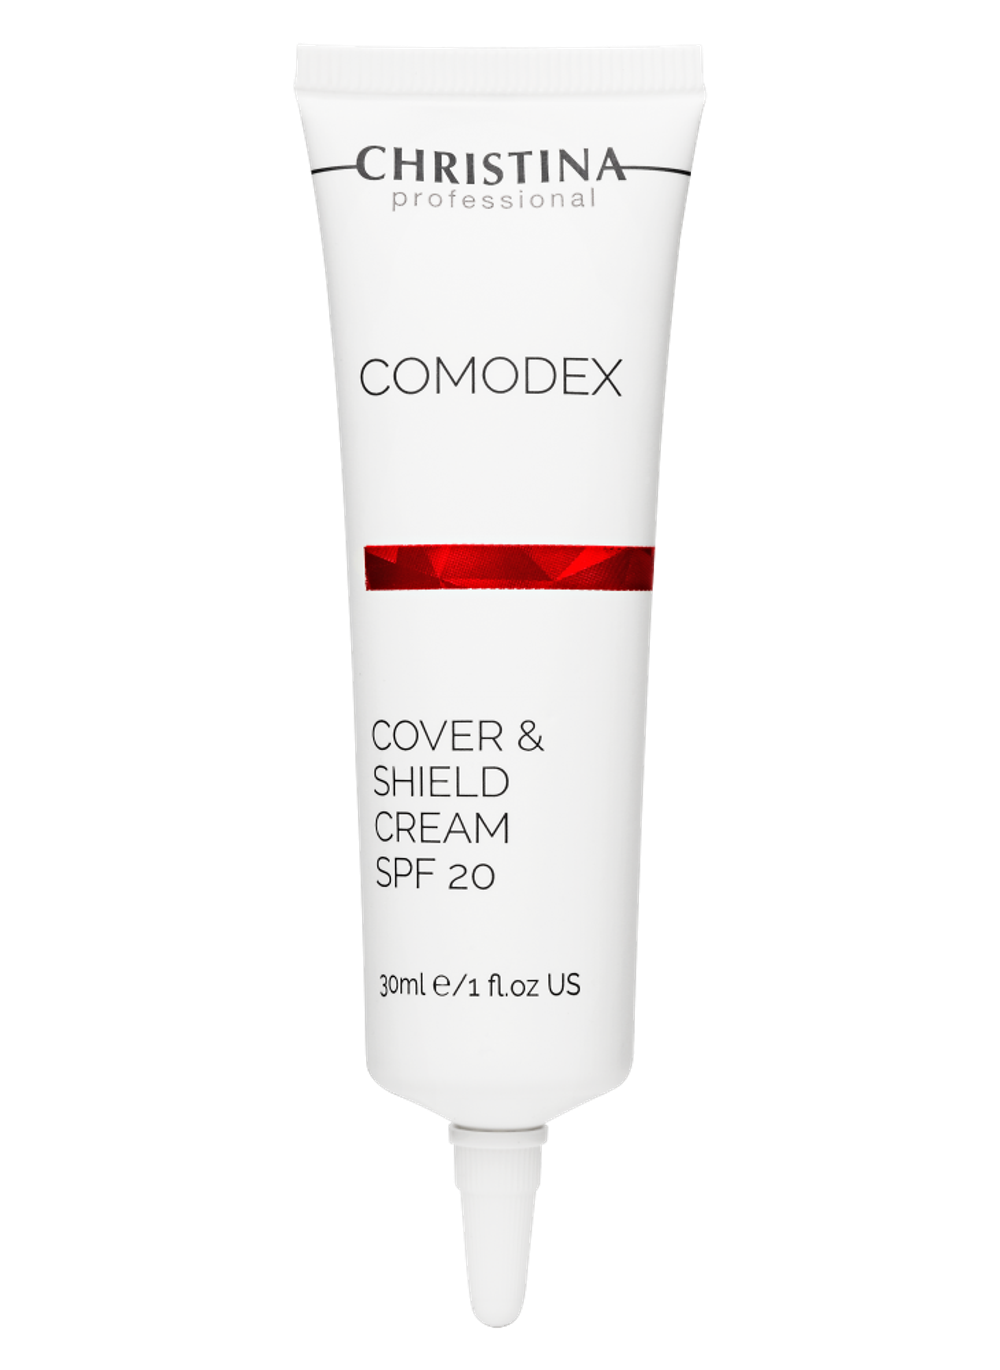 CHRISTINA Comodex Cover & Shield Cream SPF 20